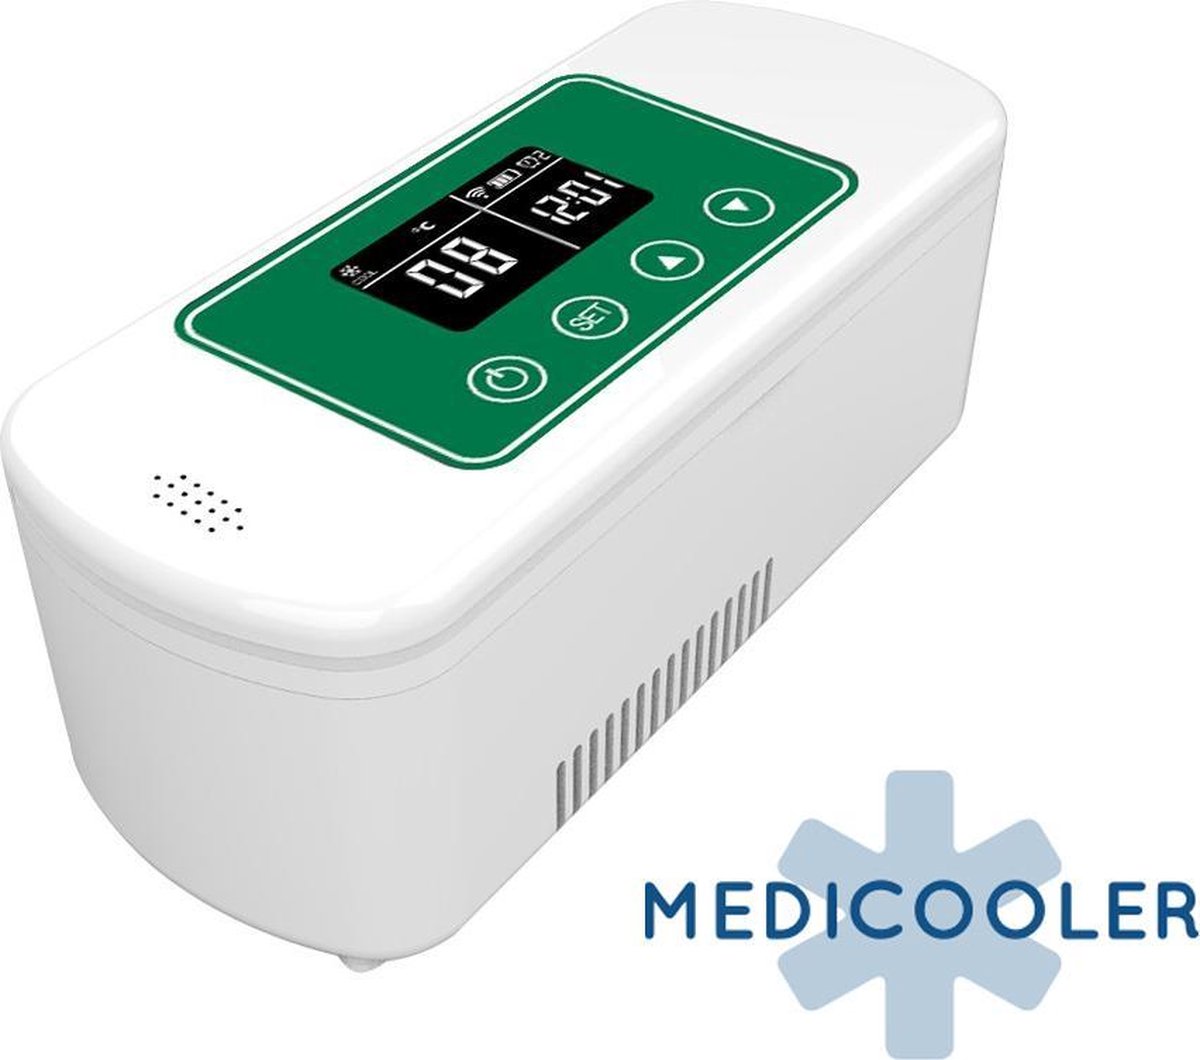 Medicooler 2 - Medicijnkoelkast + Externe Batterij | bol.com